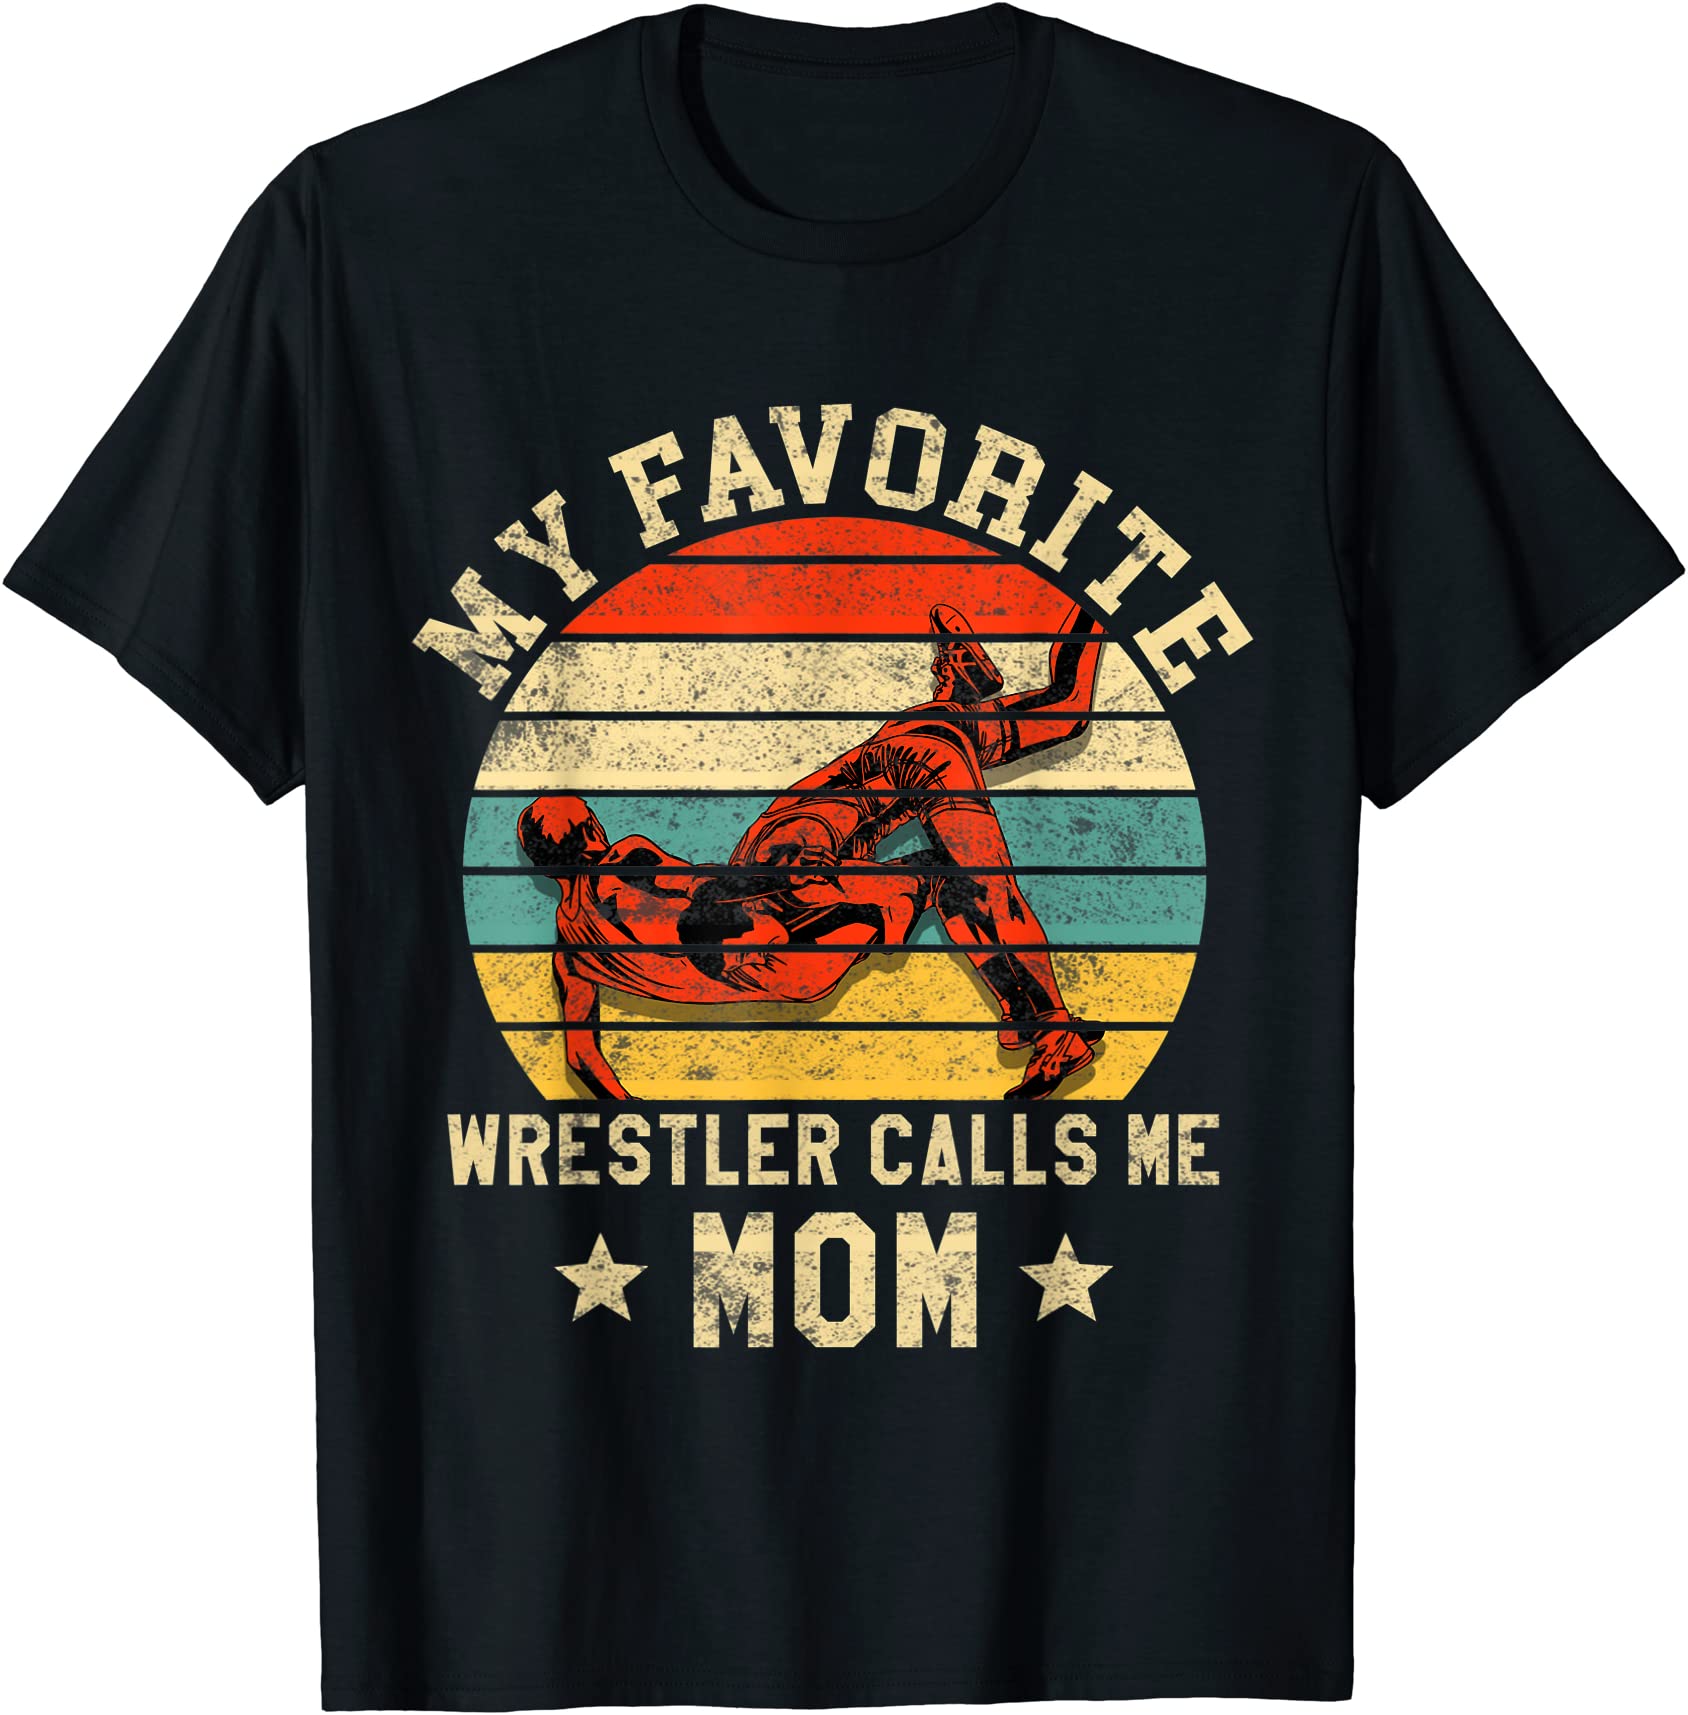 wrestling my favorite wrestler calls me mom t shirt men - Buy t-shirt ...